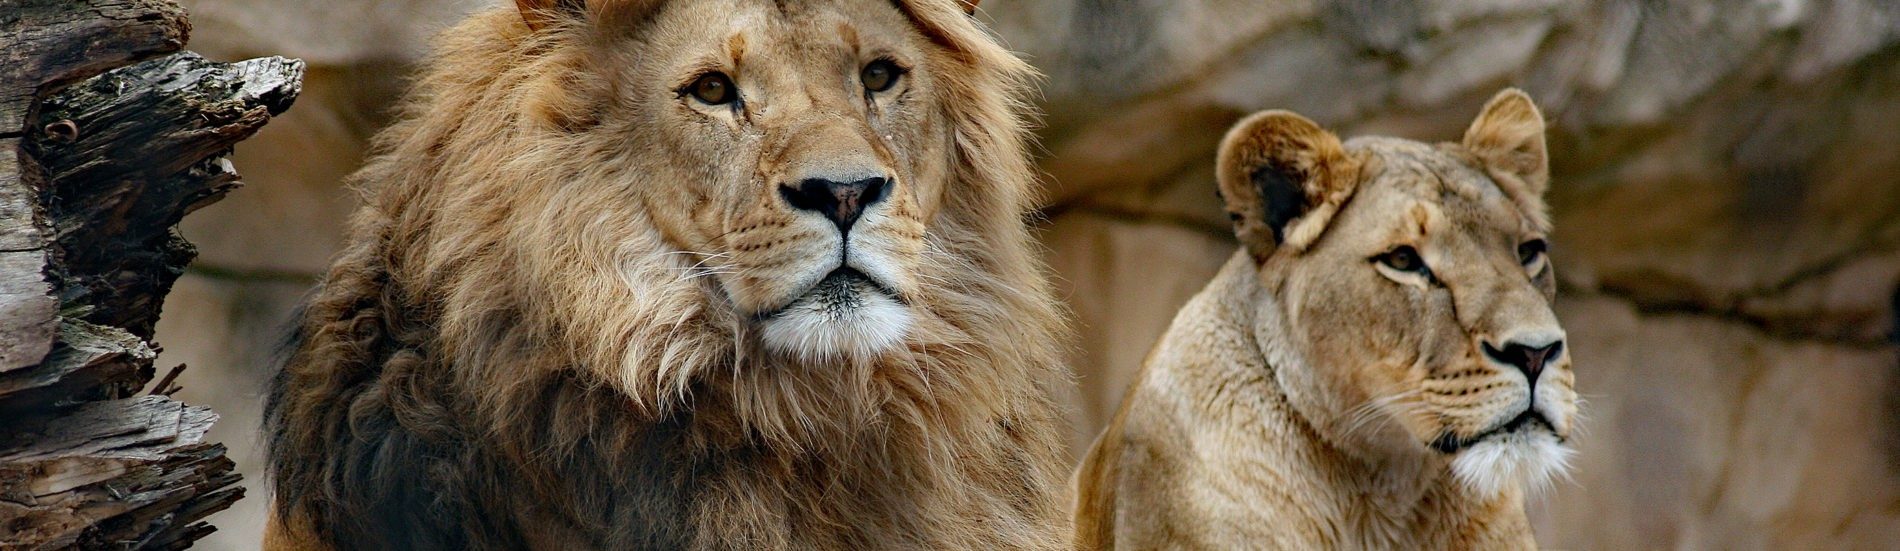 Male an female lion